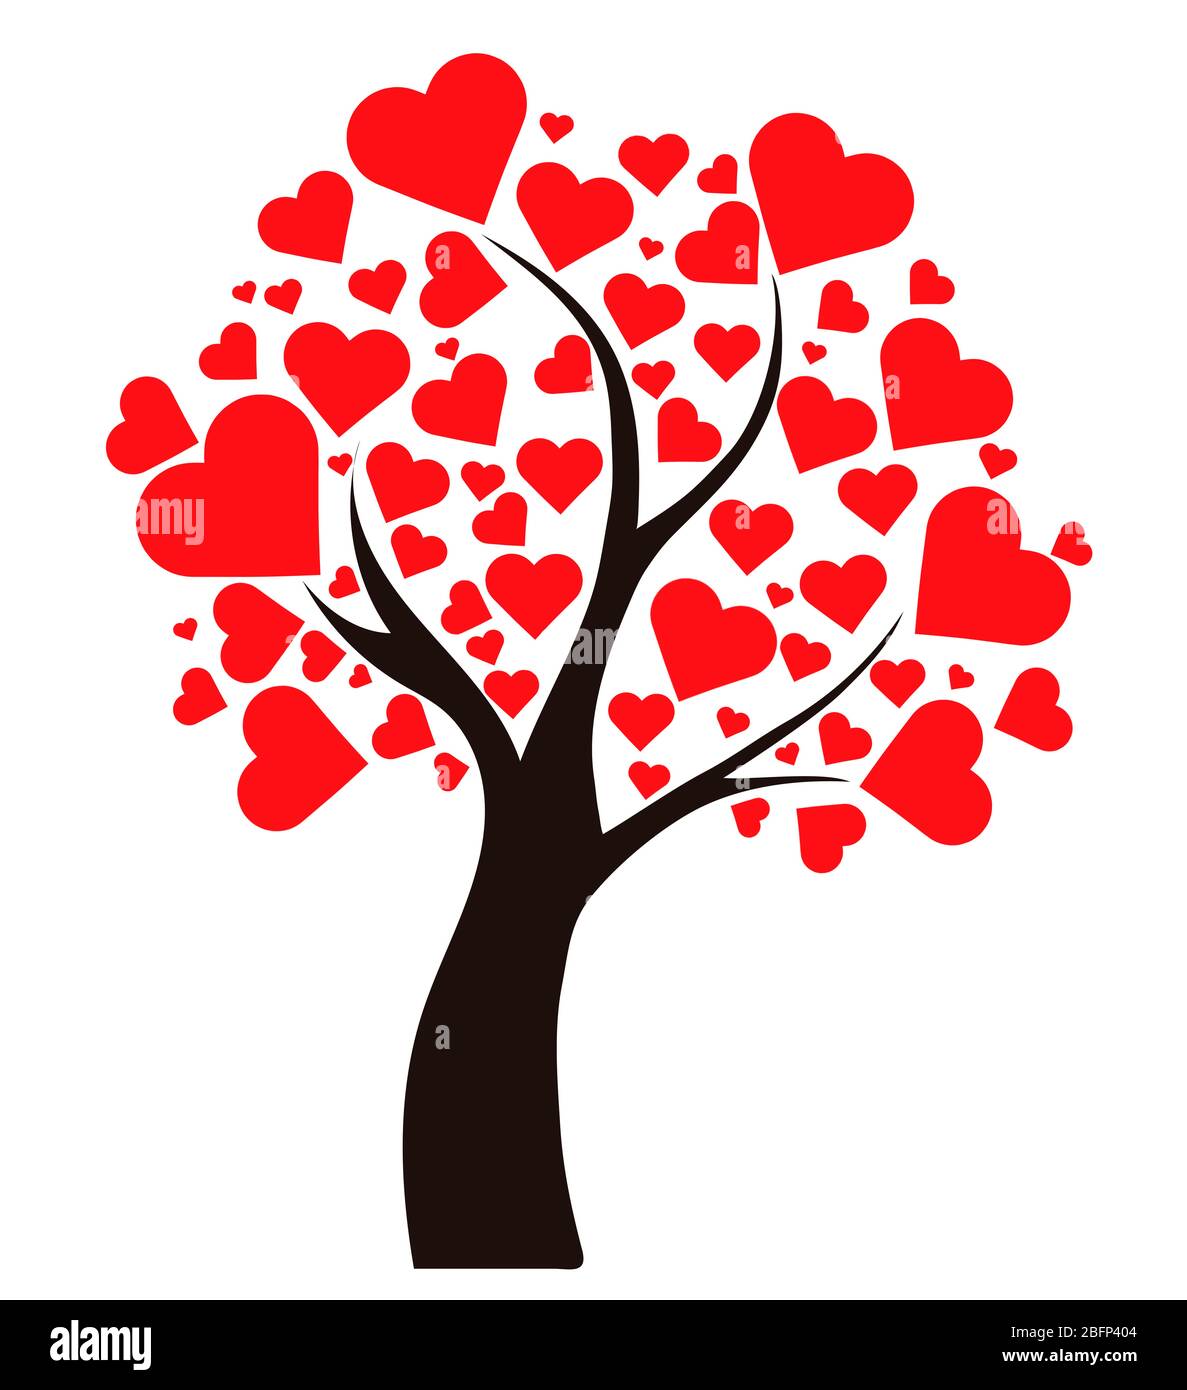 Illustrationsbaum mit Herzen Stockfoto